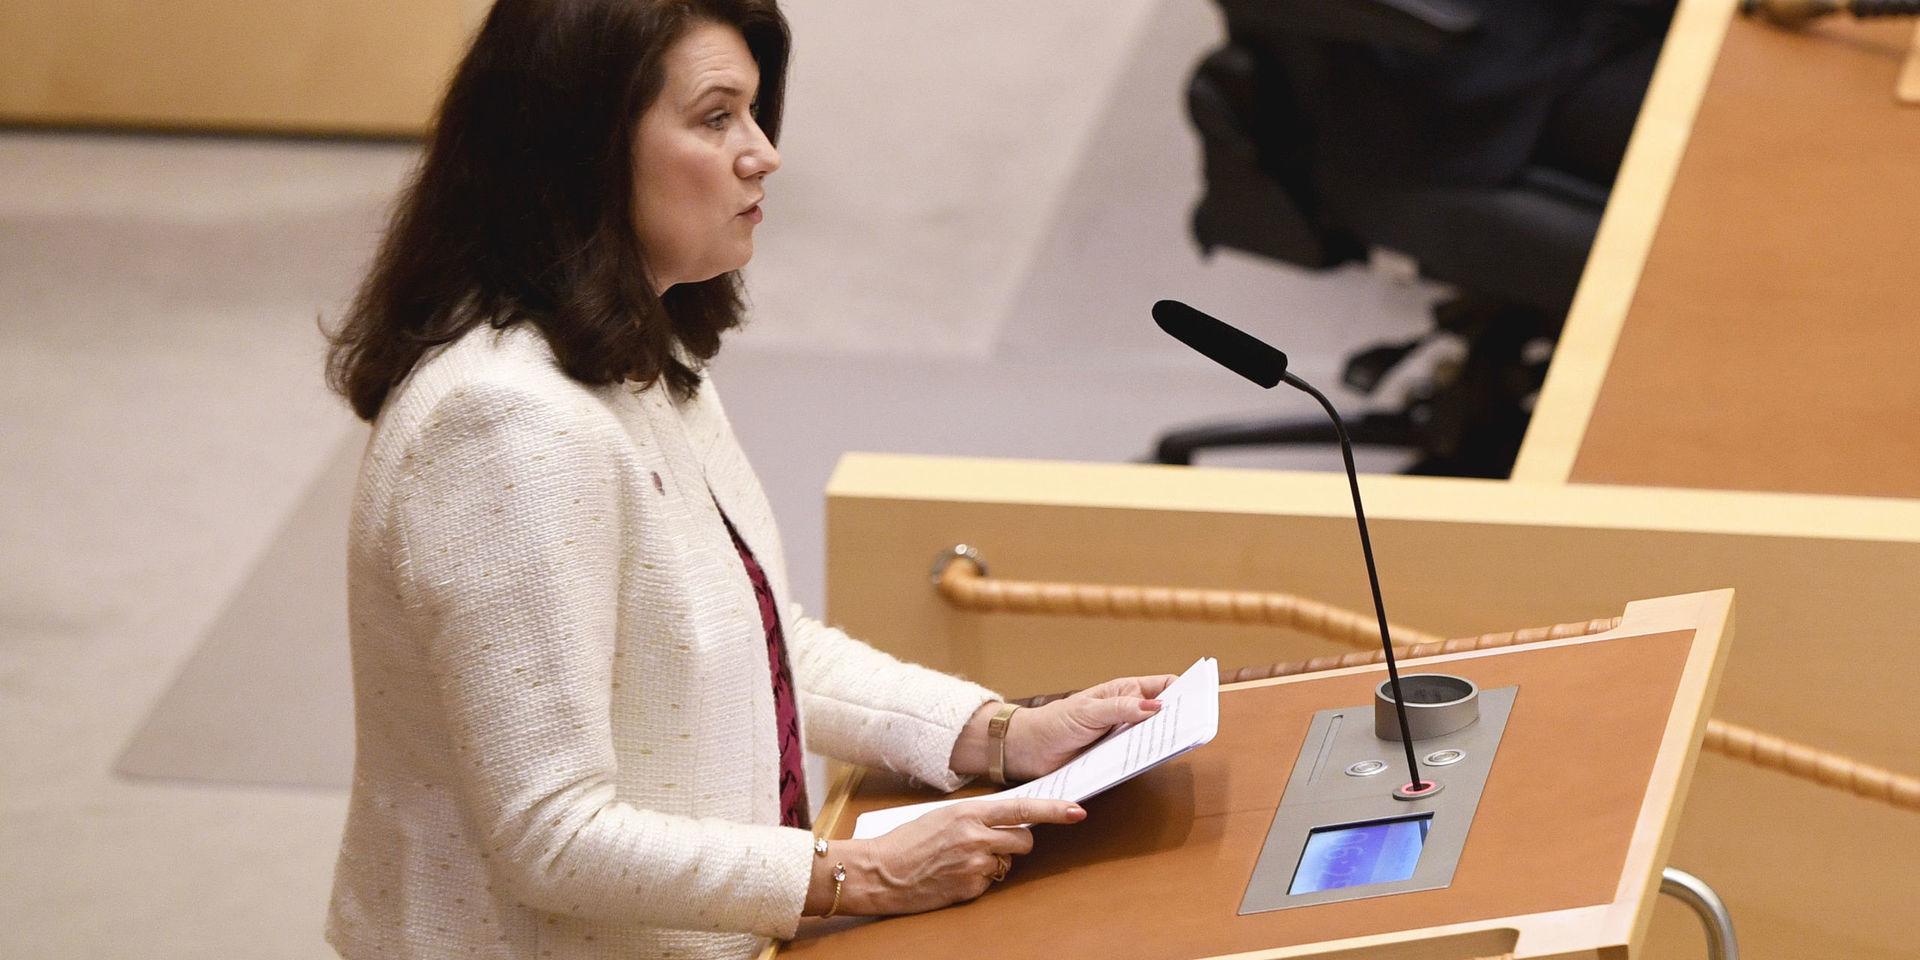 Utrikesminister Ann Linde (S) talar under den utrikespolitiska debatten i i riksdagen i Stockholm.